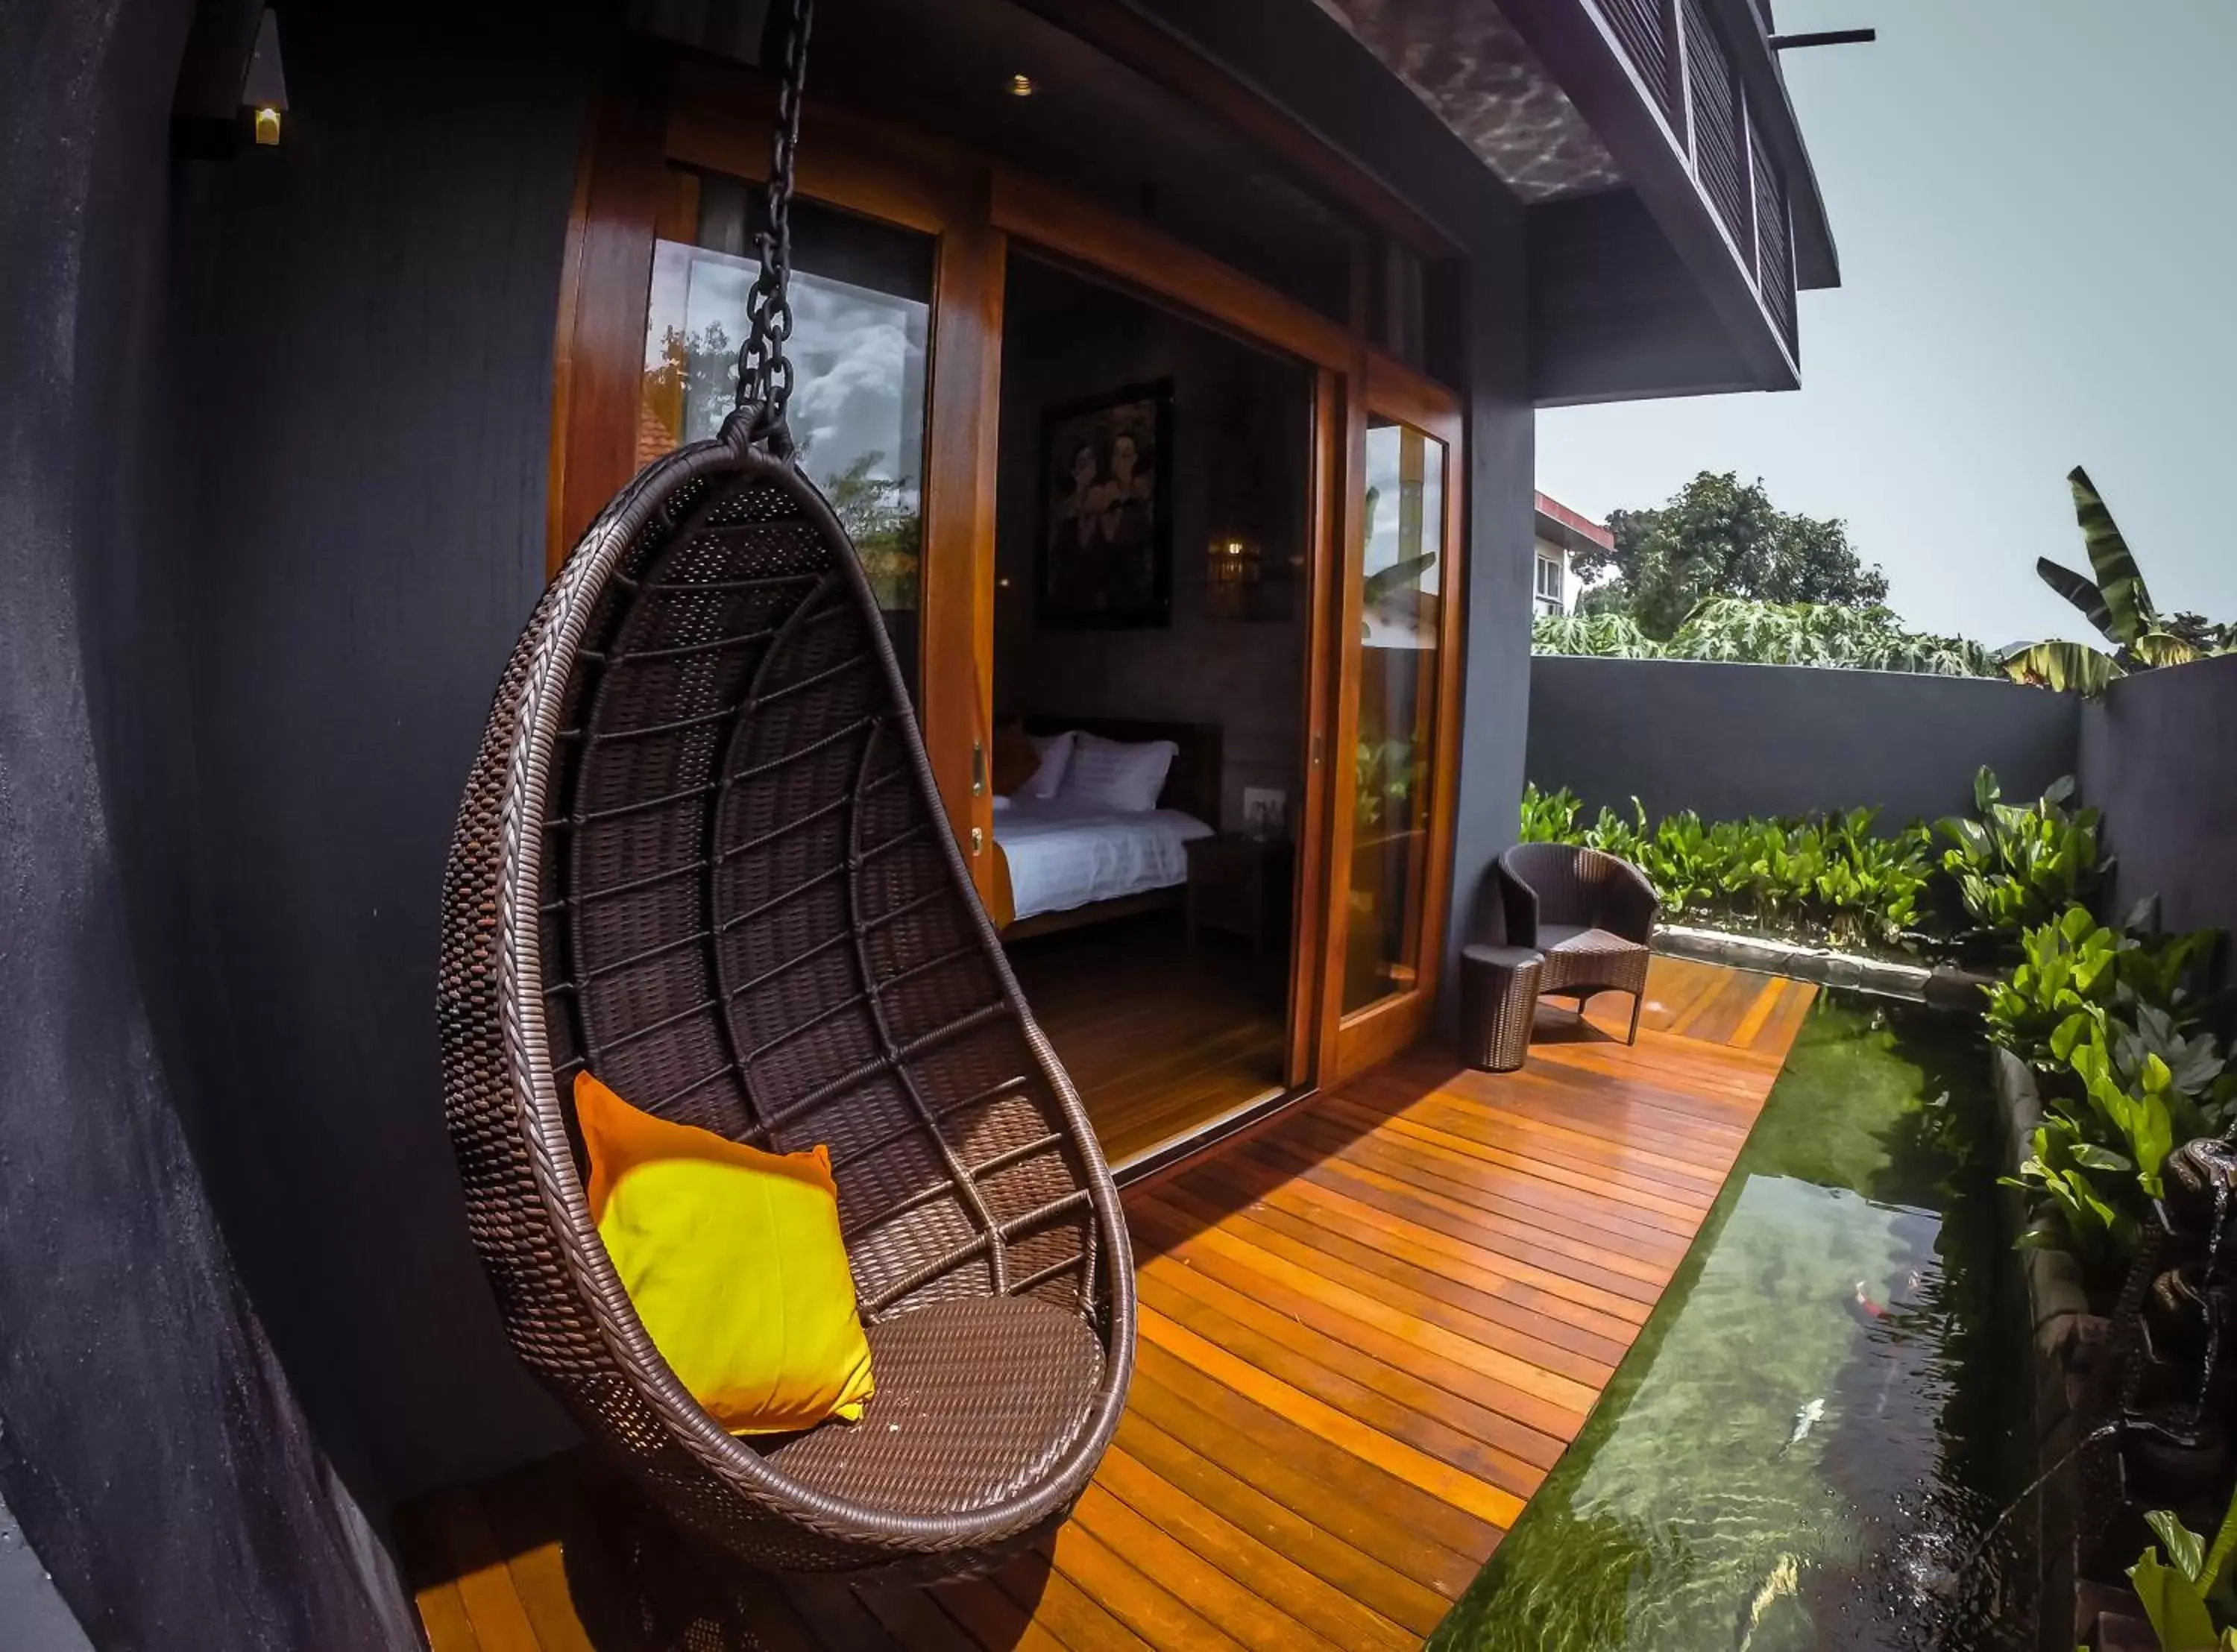 Garden view in Ipoh Bali Hotel